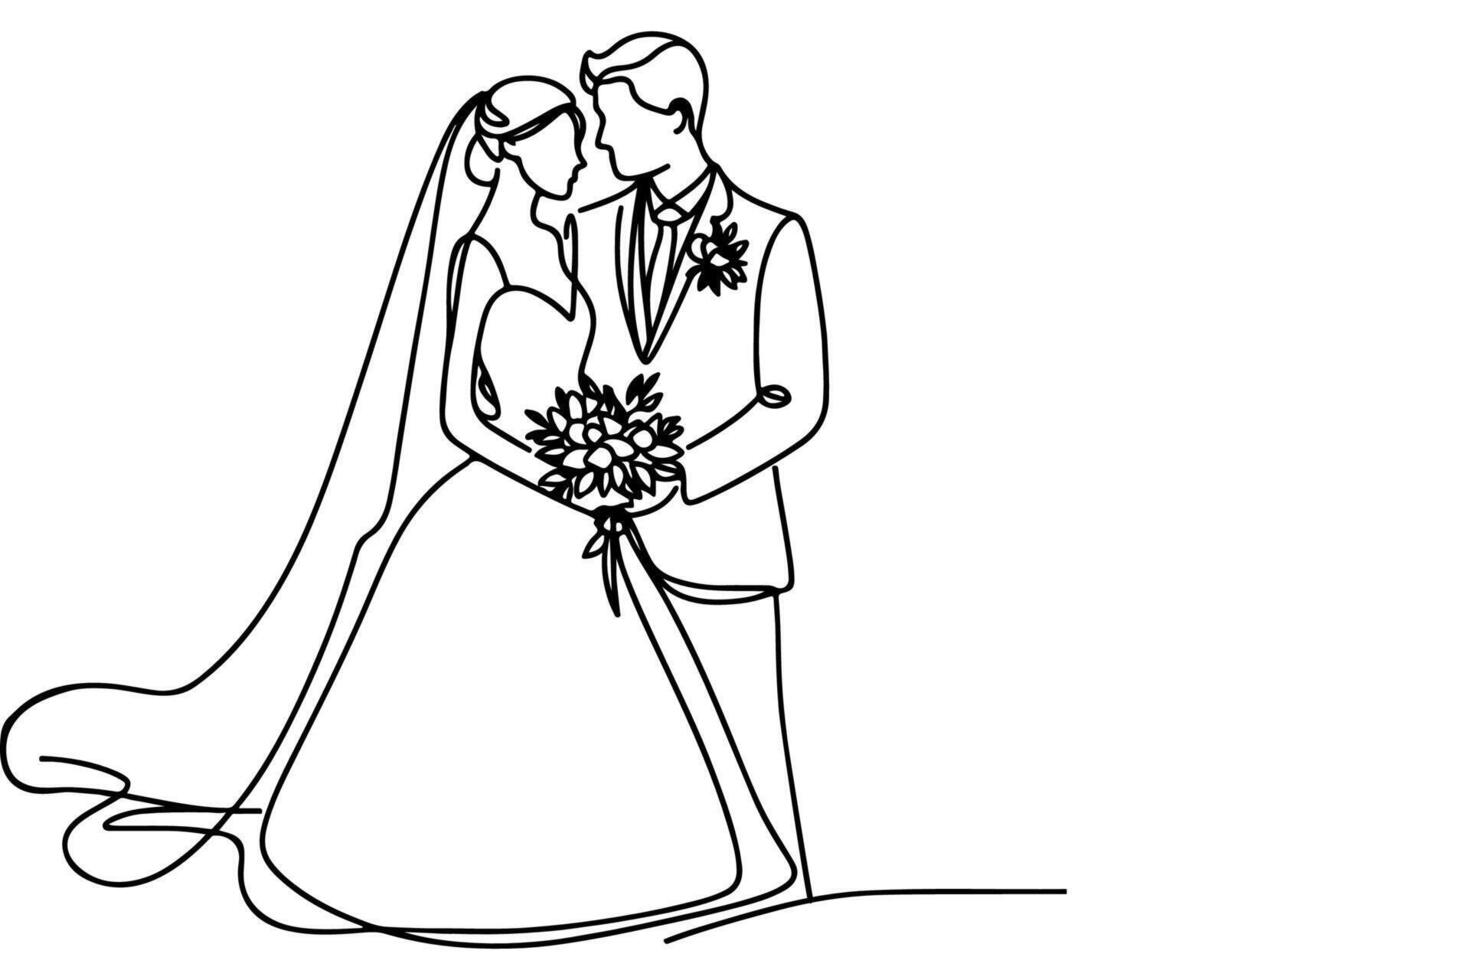 ai gerado 1 contínuo solteiro desenhando Preto linha arte rabisco Casamento casal noiva e noivo outlne vetor ilustração em branco fundo